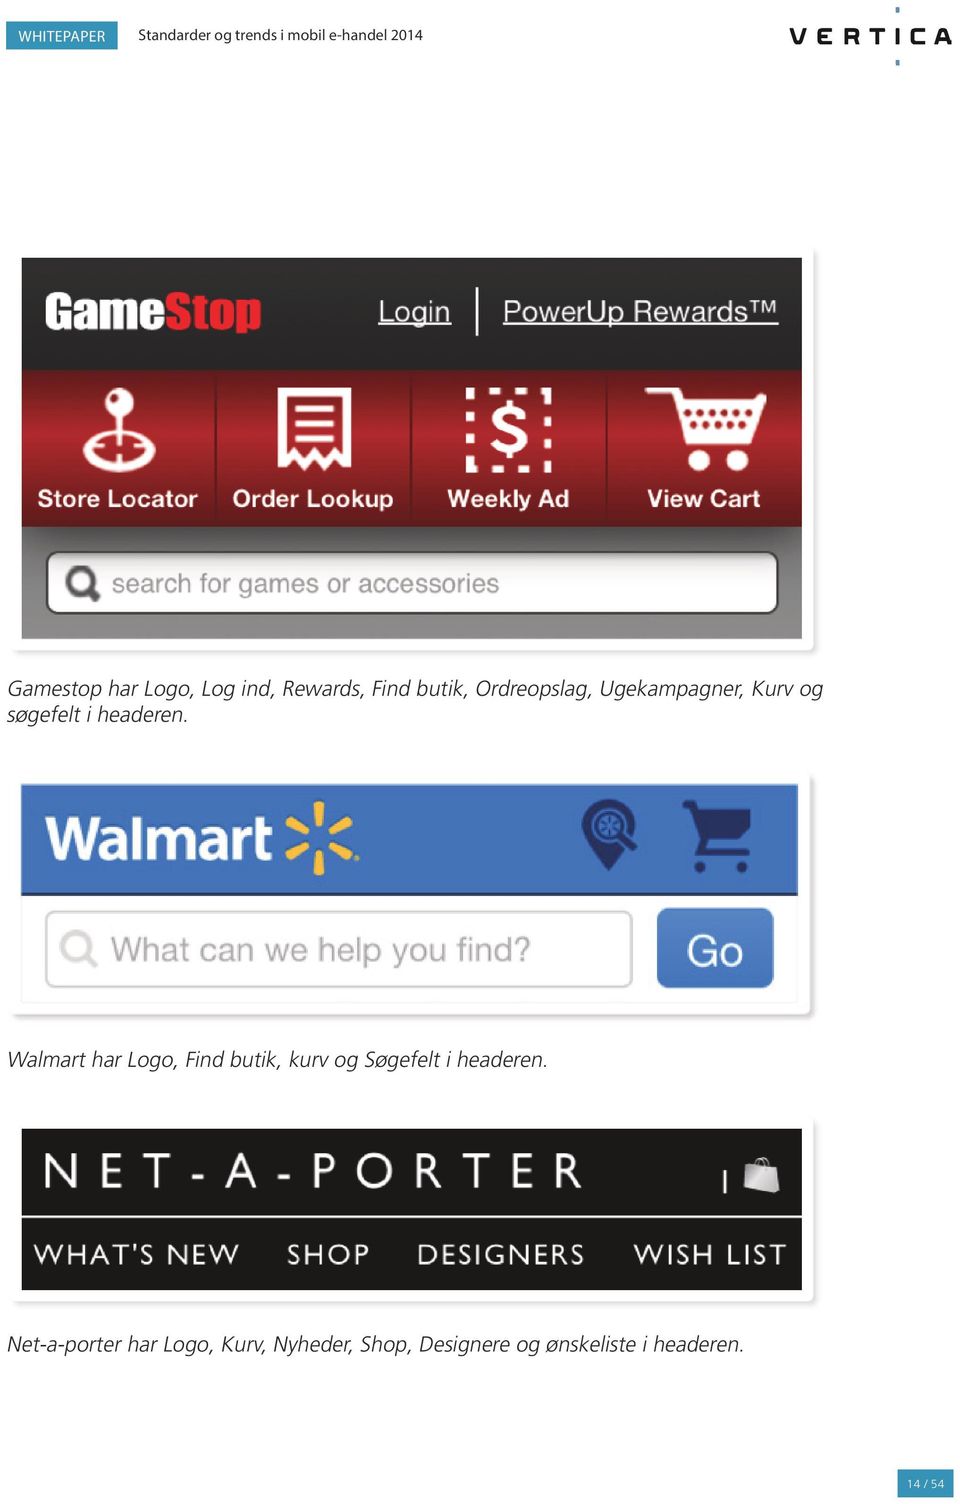 Walmart har Logo, Find butik, kurv og Søgefelt i headeren.